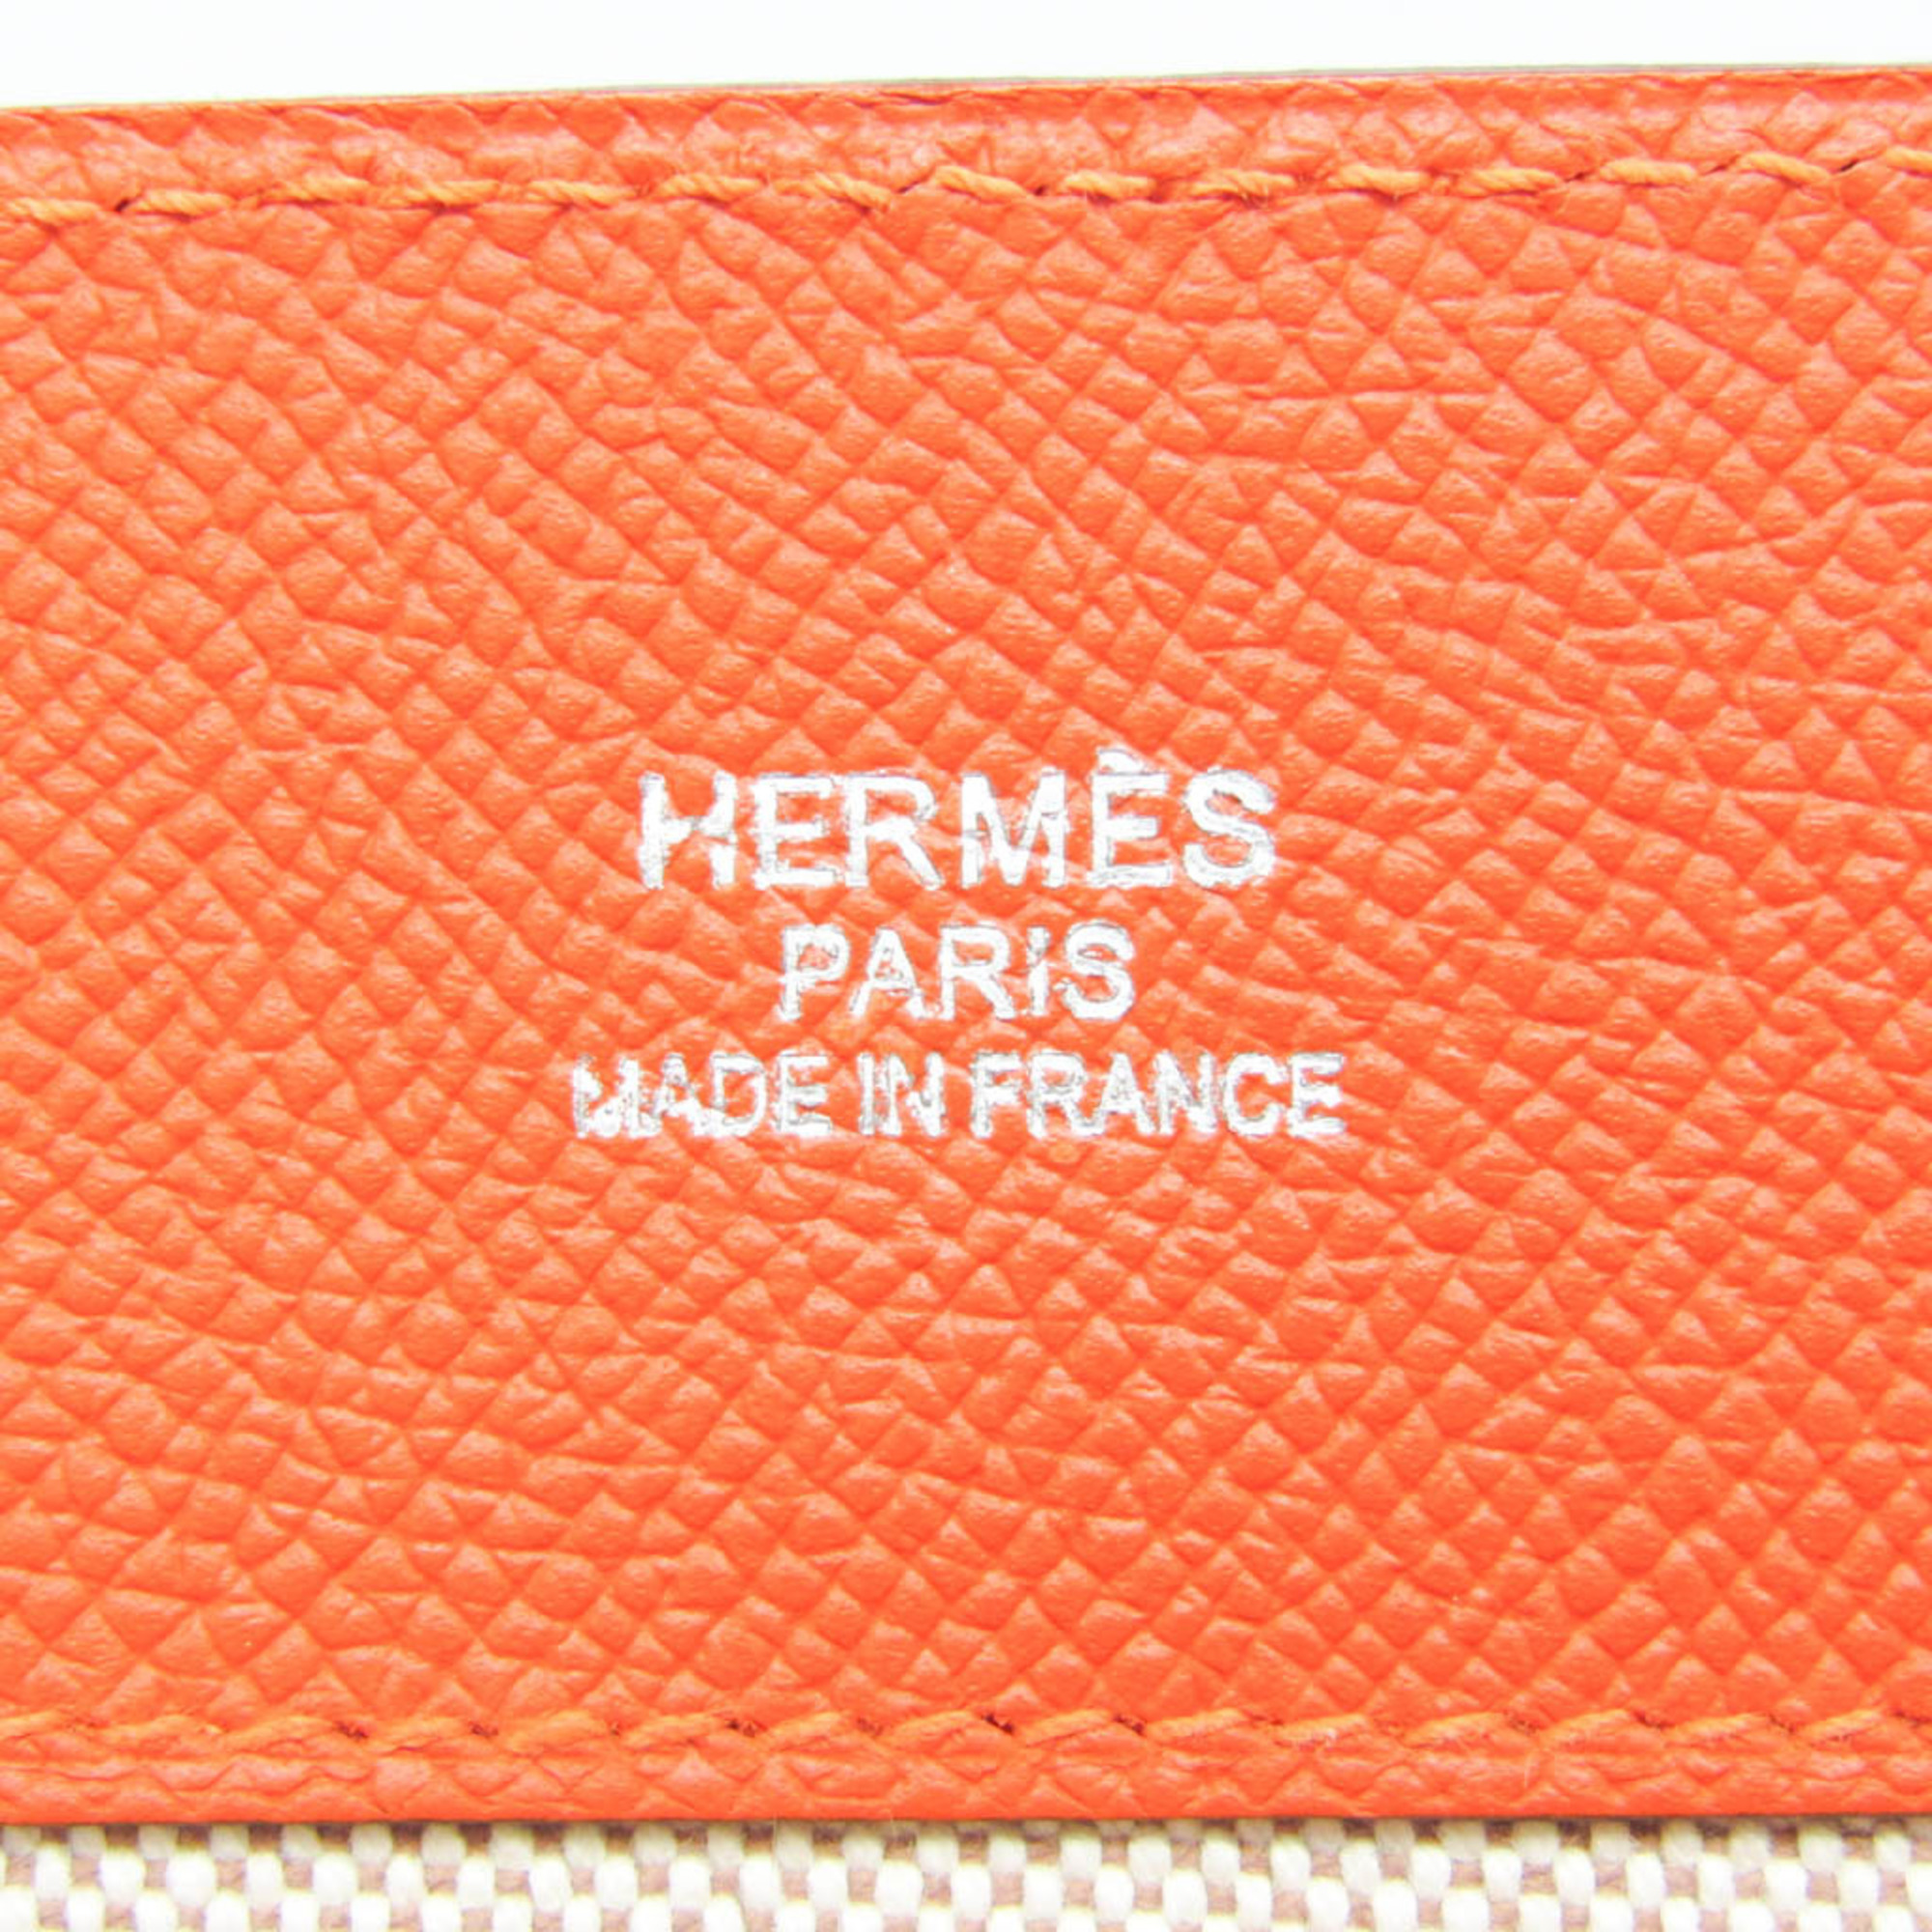 エルメス(Hermes) マキシボックスカバス36 レディース エプソン,スエード トートバッグ ブラウン,オレンジ